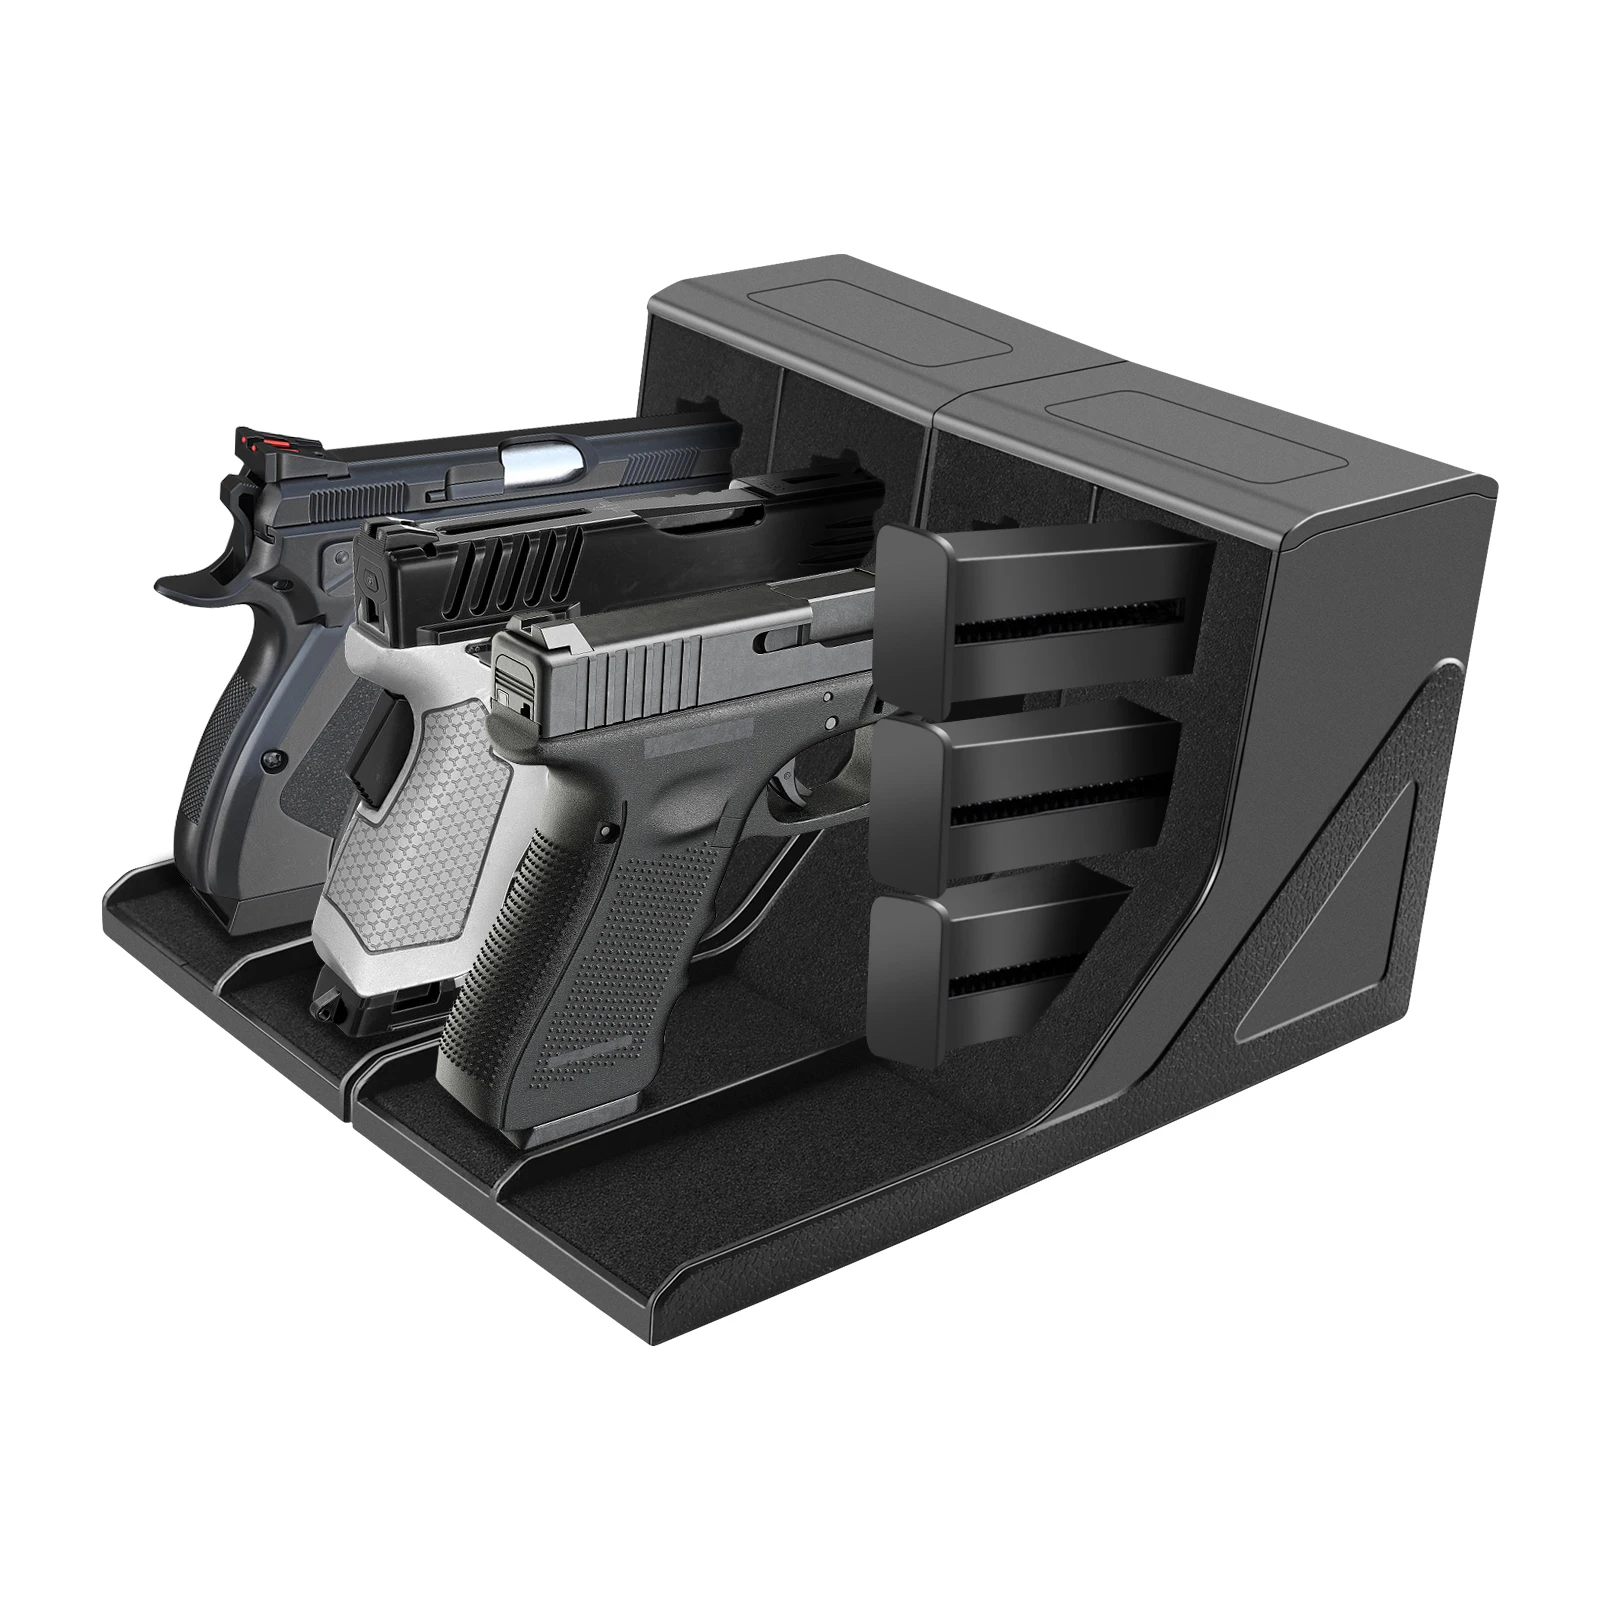 

Стойка для пистолета модульная стойка для пистолета безопасный шкаф Органайзер для хранения аксессуар универсальная защитная кобура для пистолета